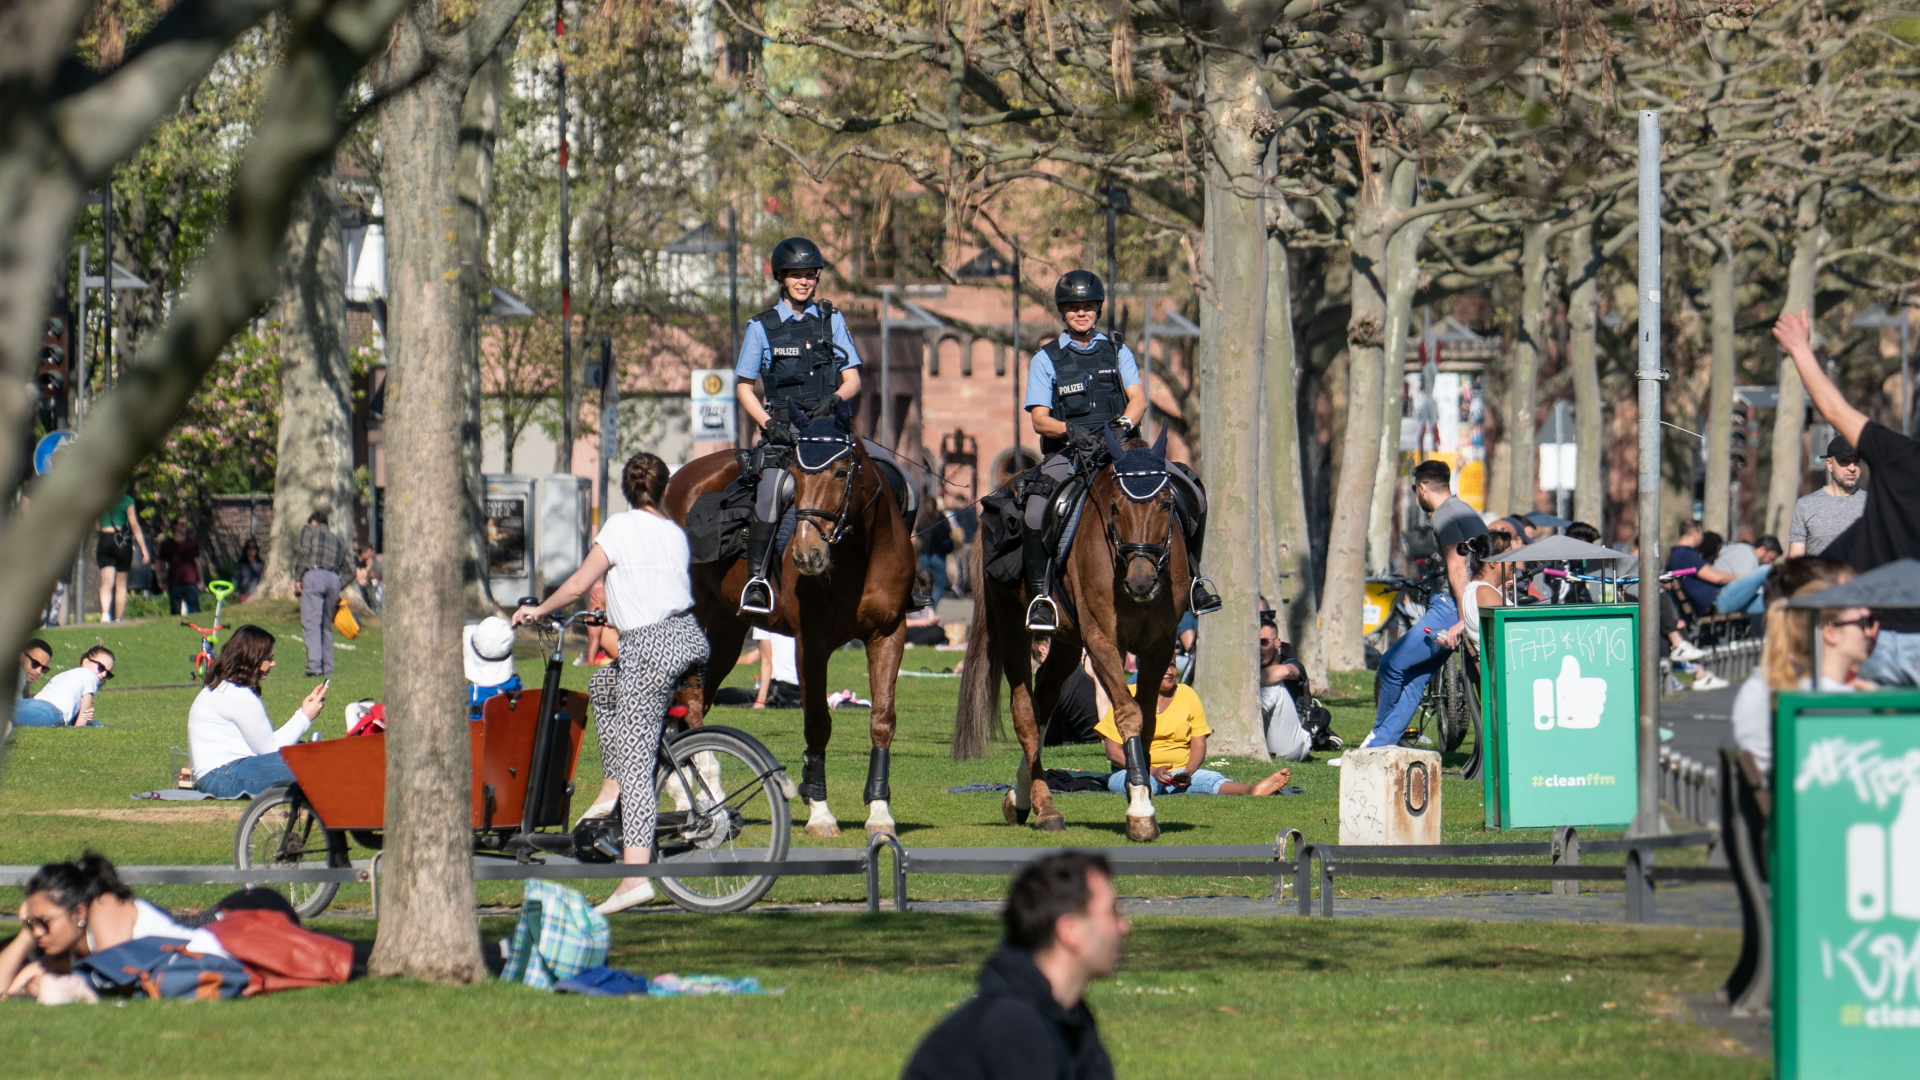 Polizisten auf Pferden kontrollieren die Kontaktsperren in einem Park in Frankfurt am Main | dpa